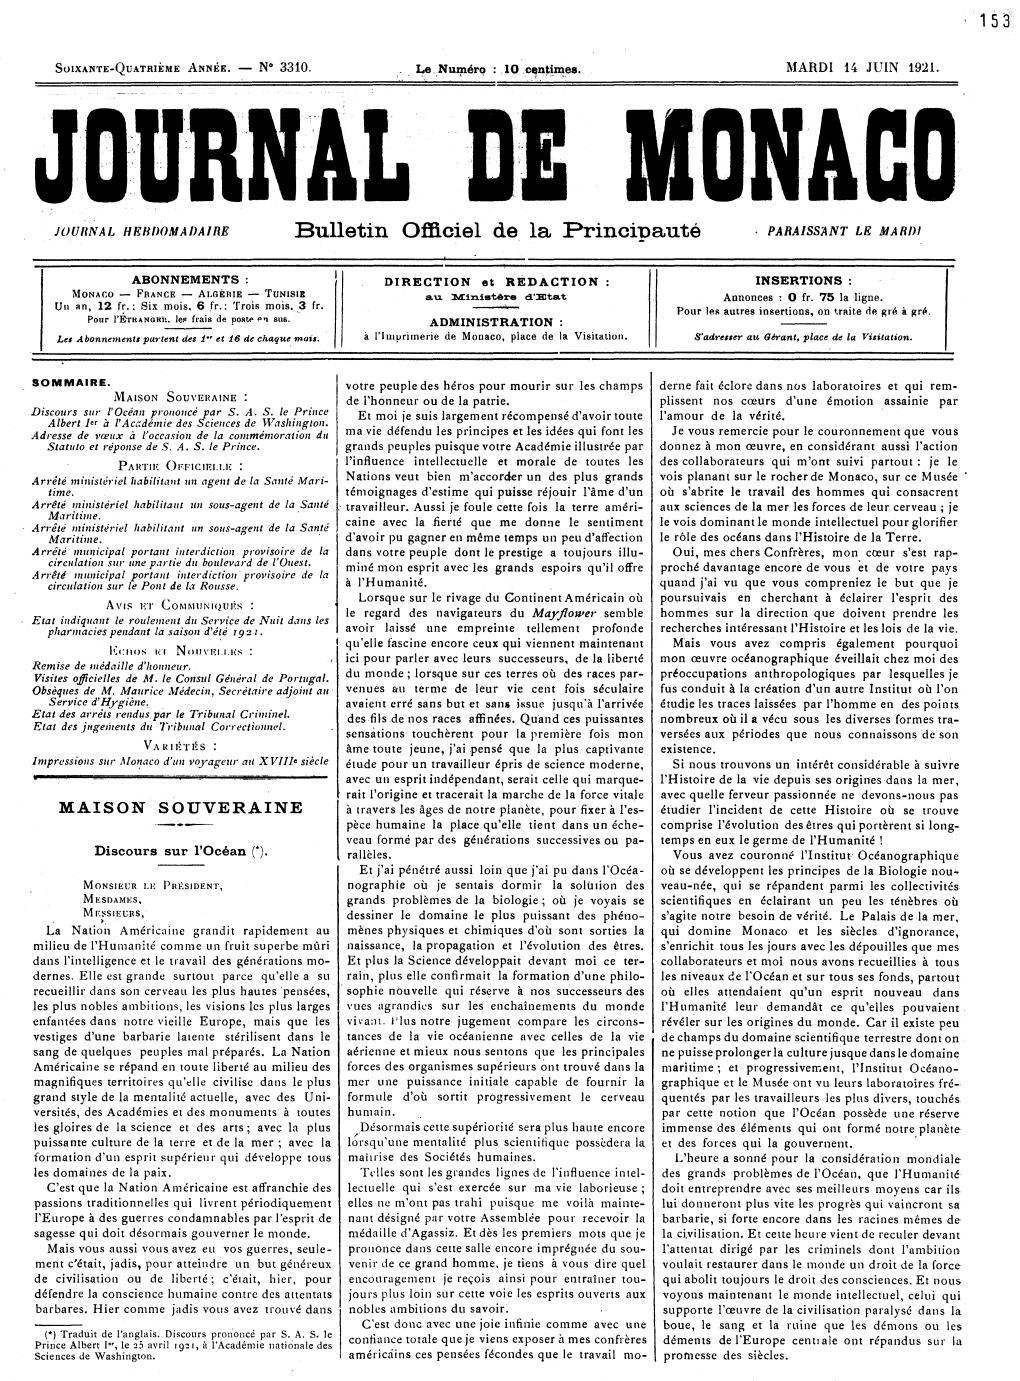 Bulletin Officiel De La Principauté - PARAISSANT LE MARDI